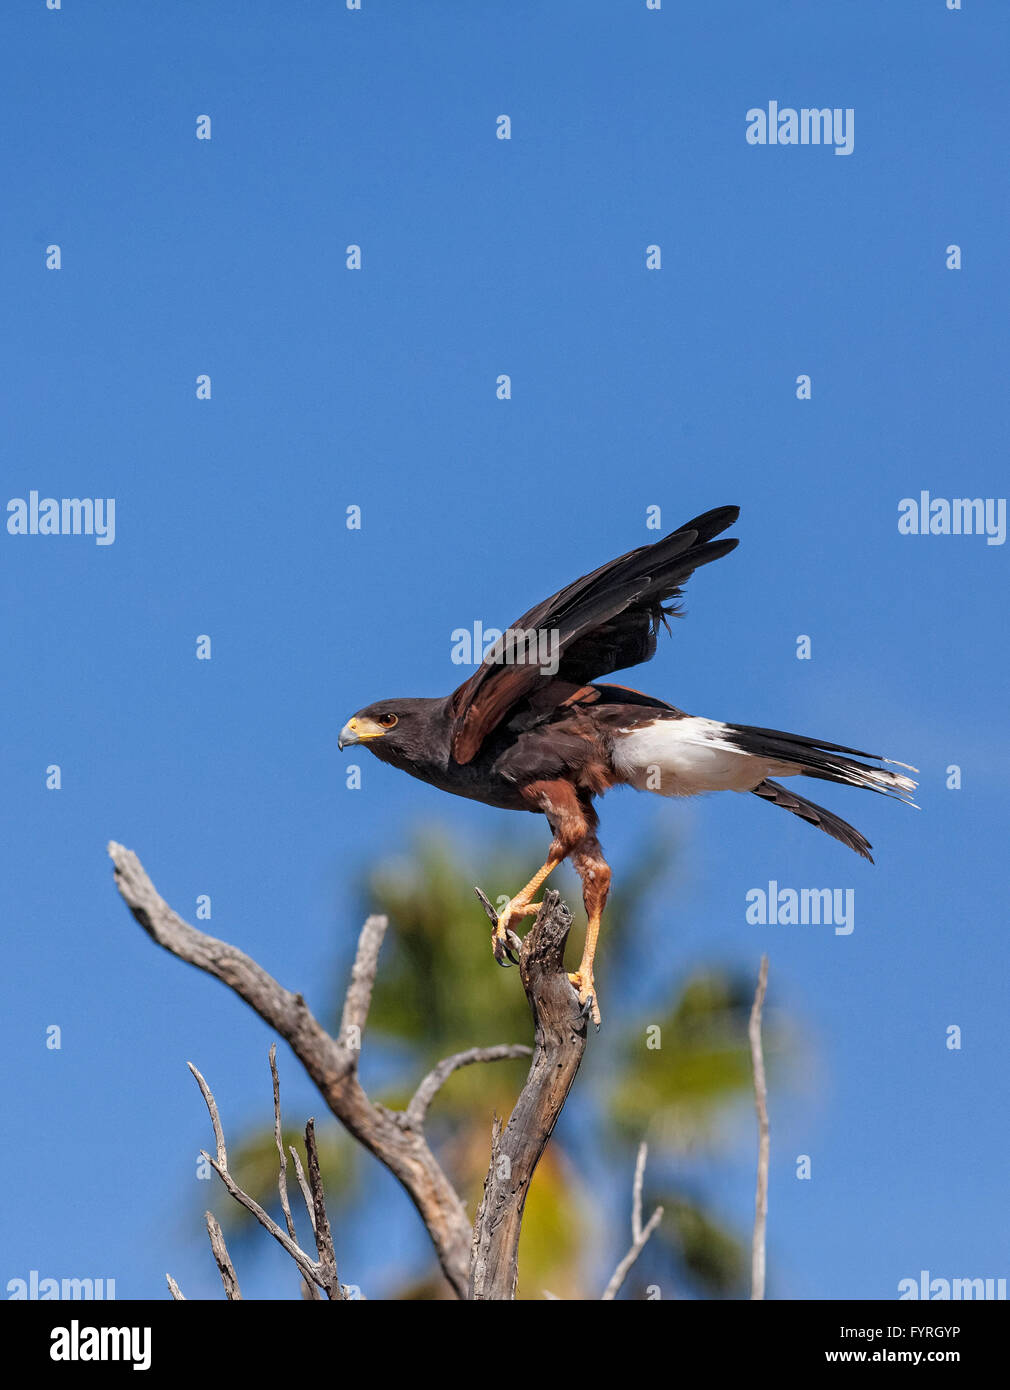 La Harris's Hawk, Parabuteo unicinctus, è precedentemente noto come il falco Bay-Winged o Dusky Hawk visto nel Deserto di Sonora. Foto Stock